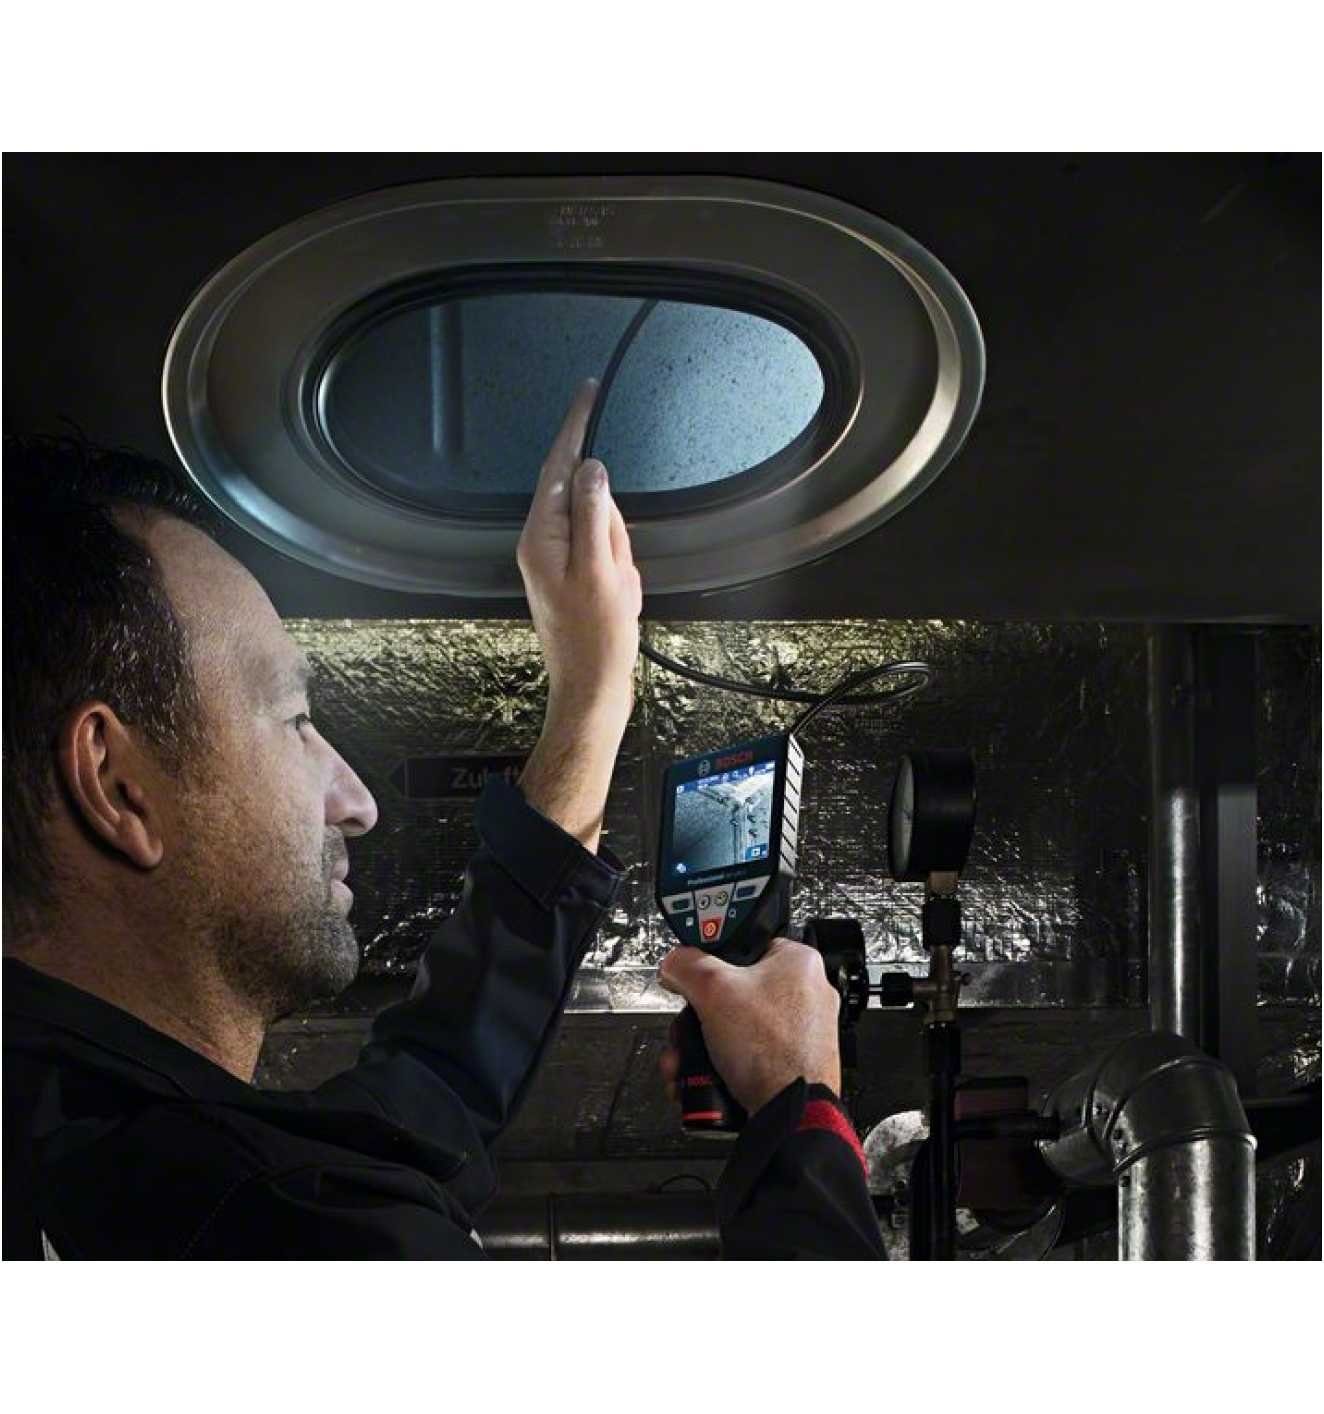 Bosch Professional GIC 120 in (Für einem räumliche optimale Ausrichtung eine Inspektionskamera gleichzeitiger mit Orientierung Bildes Funktion und Display) des is operiert großen Rotation „Up Up“™ die